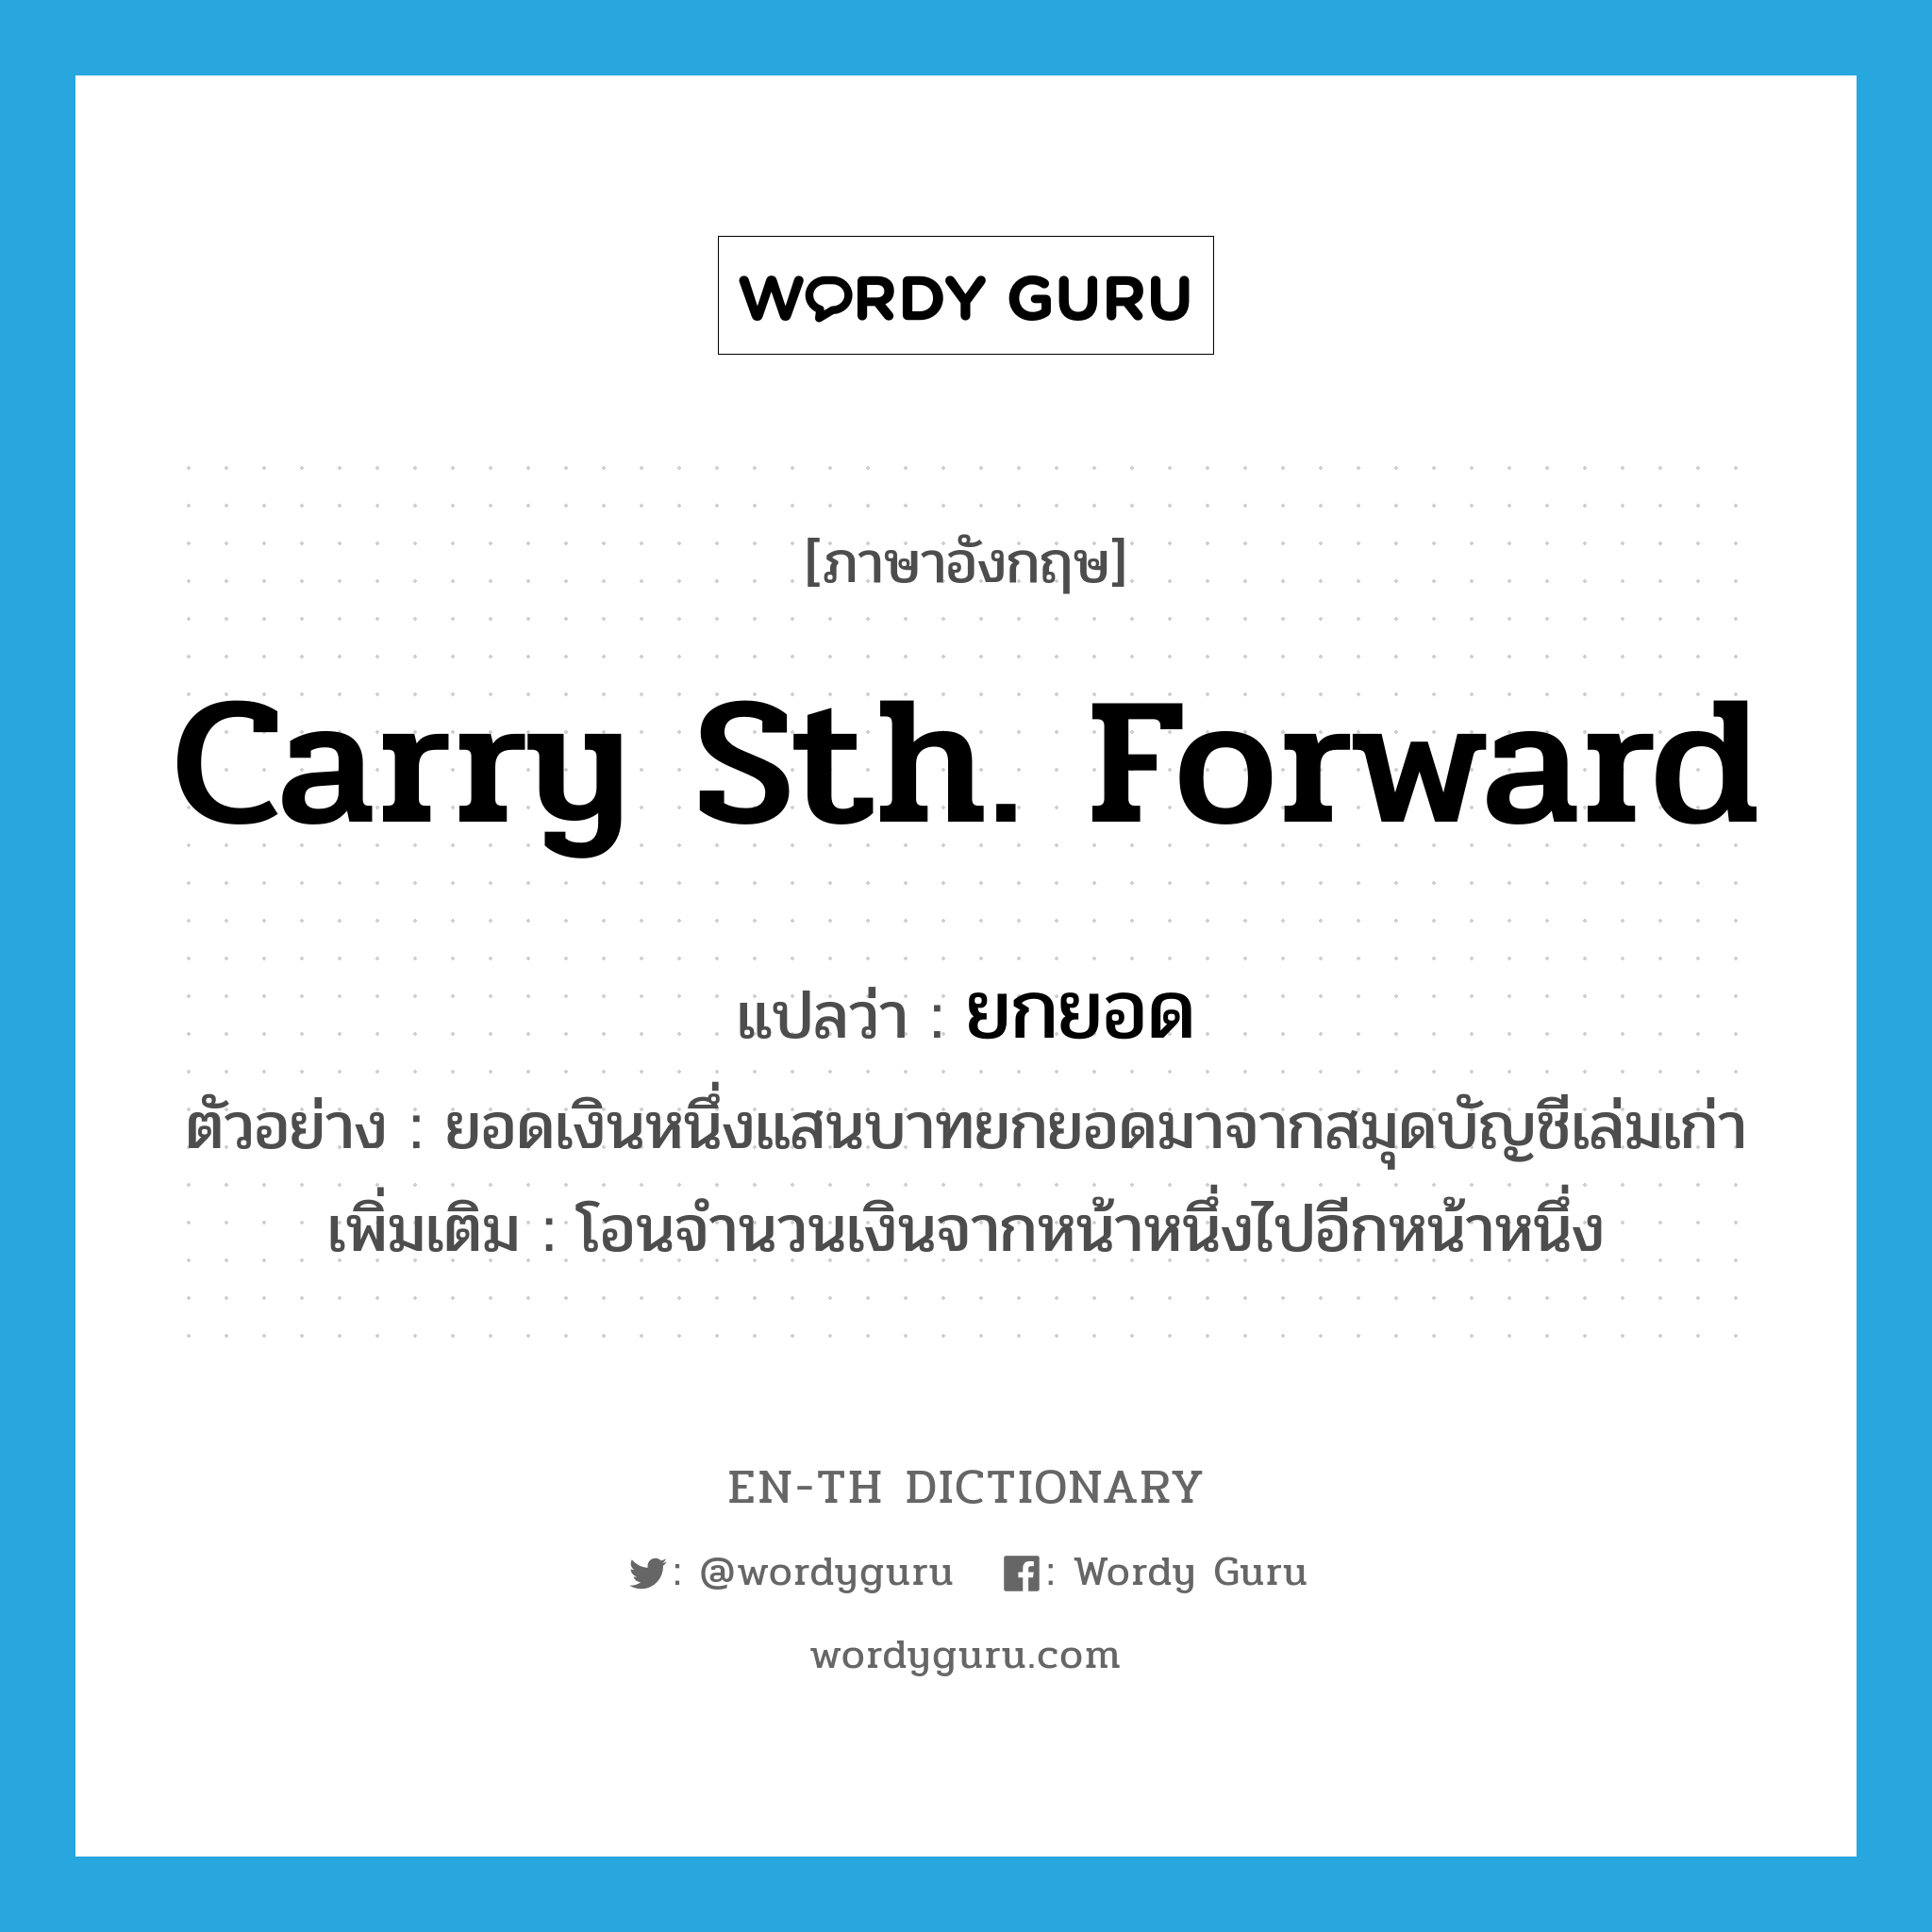 carry sth. Forward แปลว่า?, คำศัพท์ภาษาอังกฤษ carry sth. Forward แปลว่า ยกยอด ประเภท V ตัวอย่าง ยอดเงินหนึ่งแสนบาทยกยอดมาจากสมุดบัญชีเล่มเก่า เพิ่มเติม โอนจำนวนเงินจากหน้าหนึ่งไปอีกหน้าหนึ่ง หมวด V